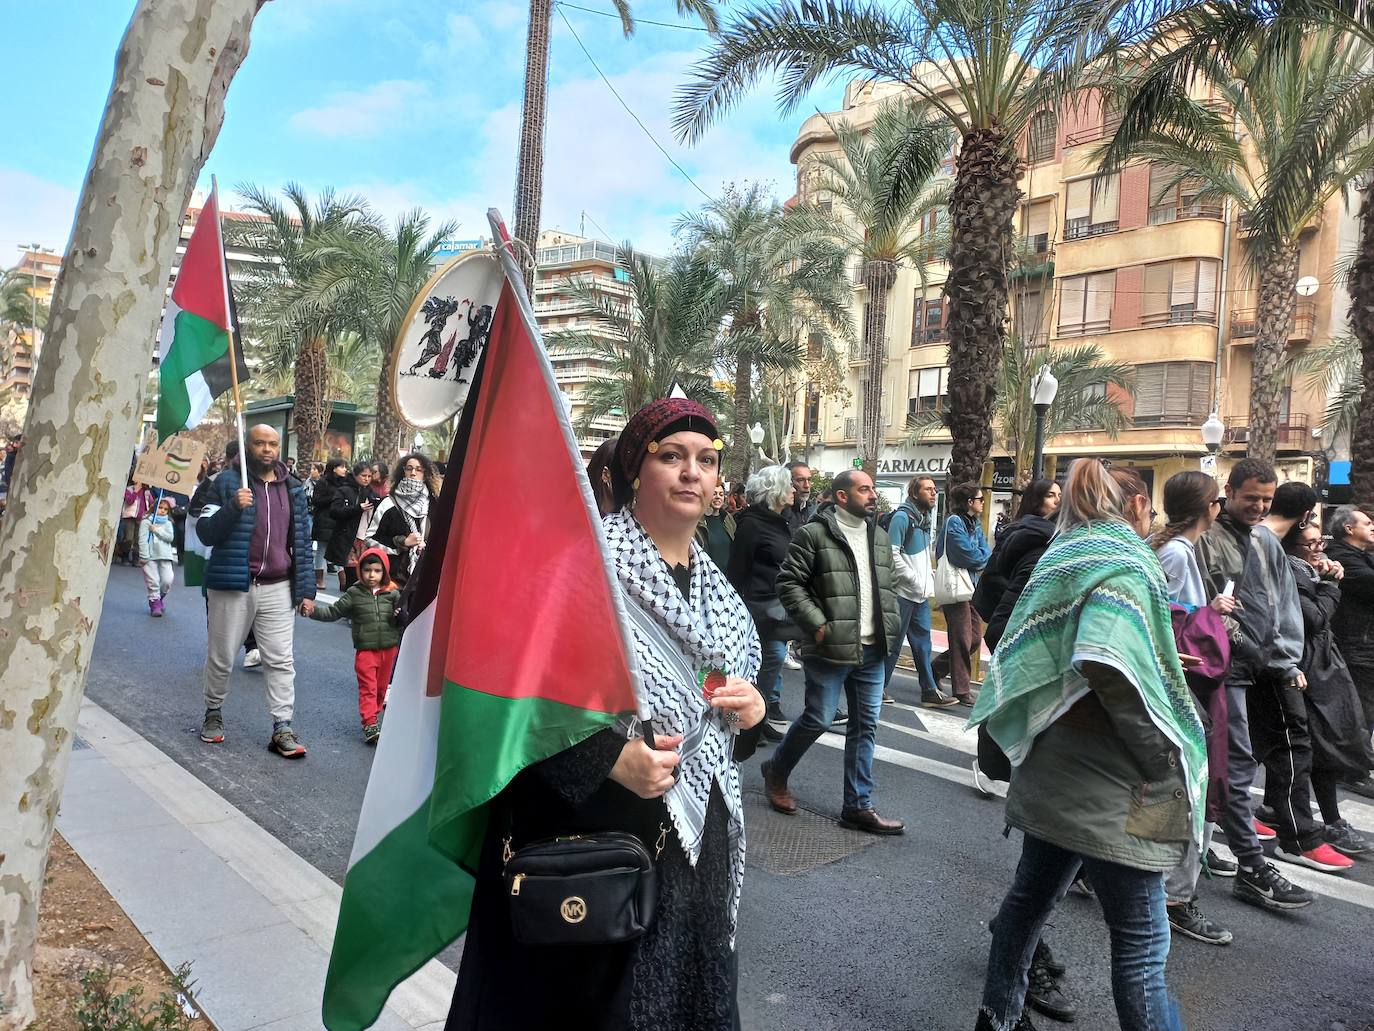 Más de un millar de personas se manifiestan en Alicante en apoyo a Palestina